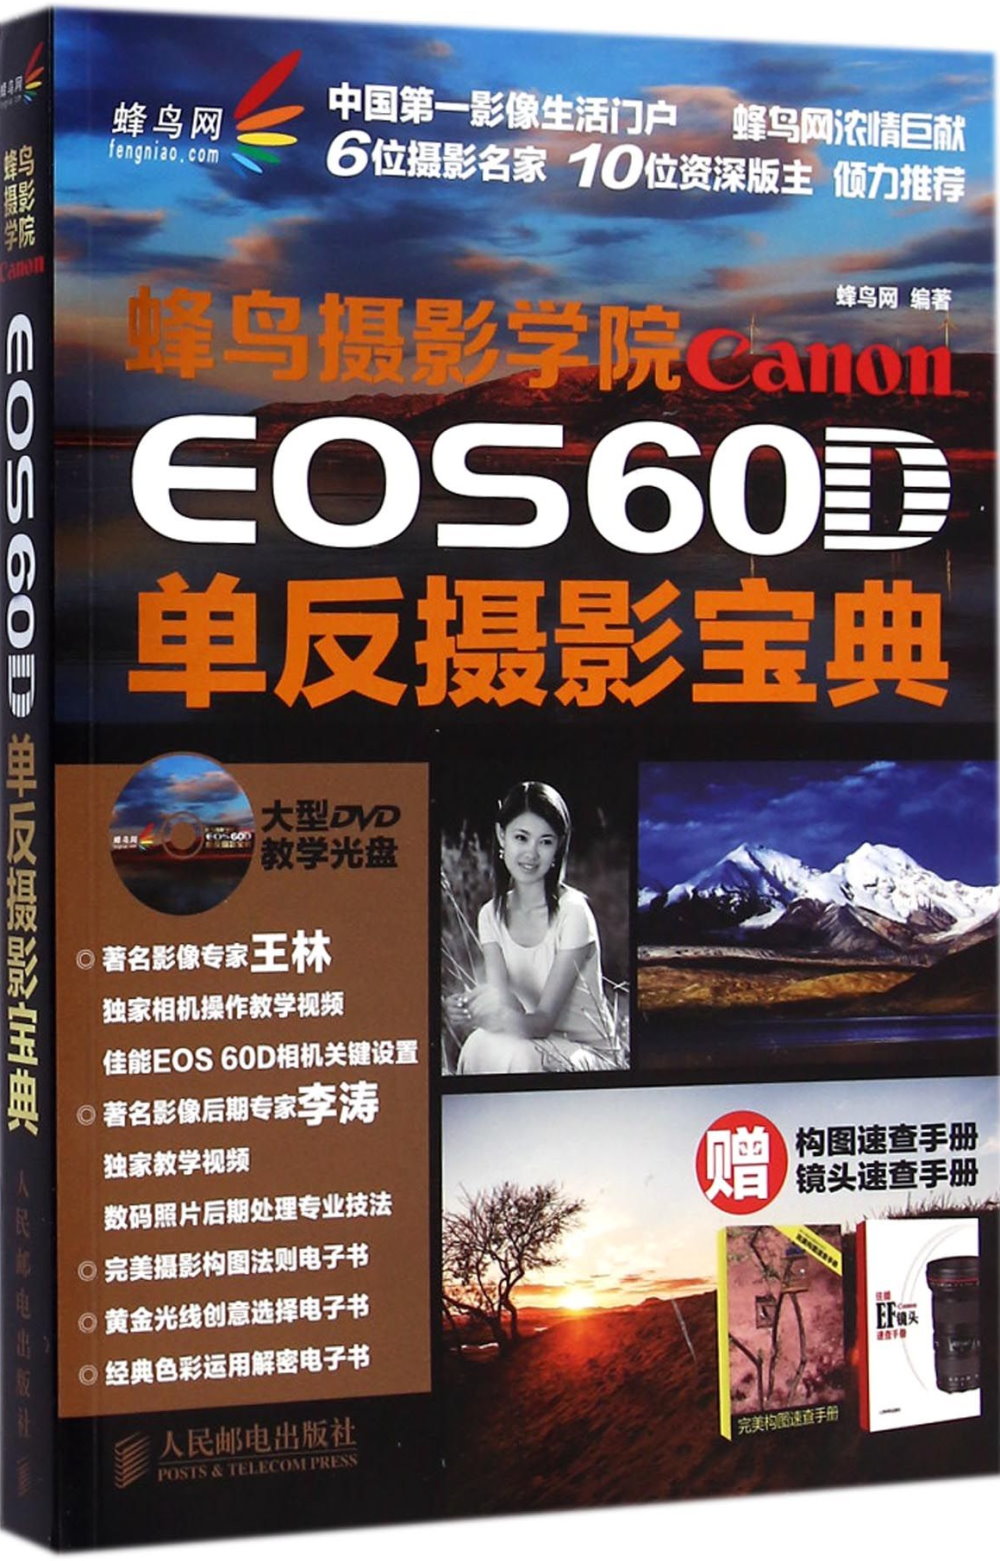 蜂鳥攝影學院Canon EOS 60D單反攝影寶典